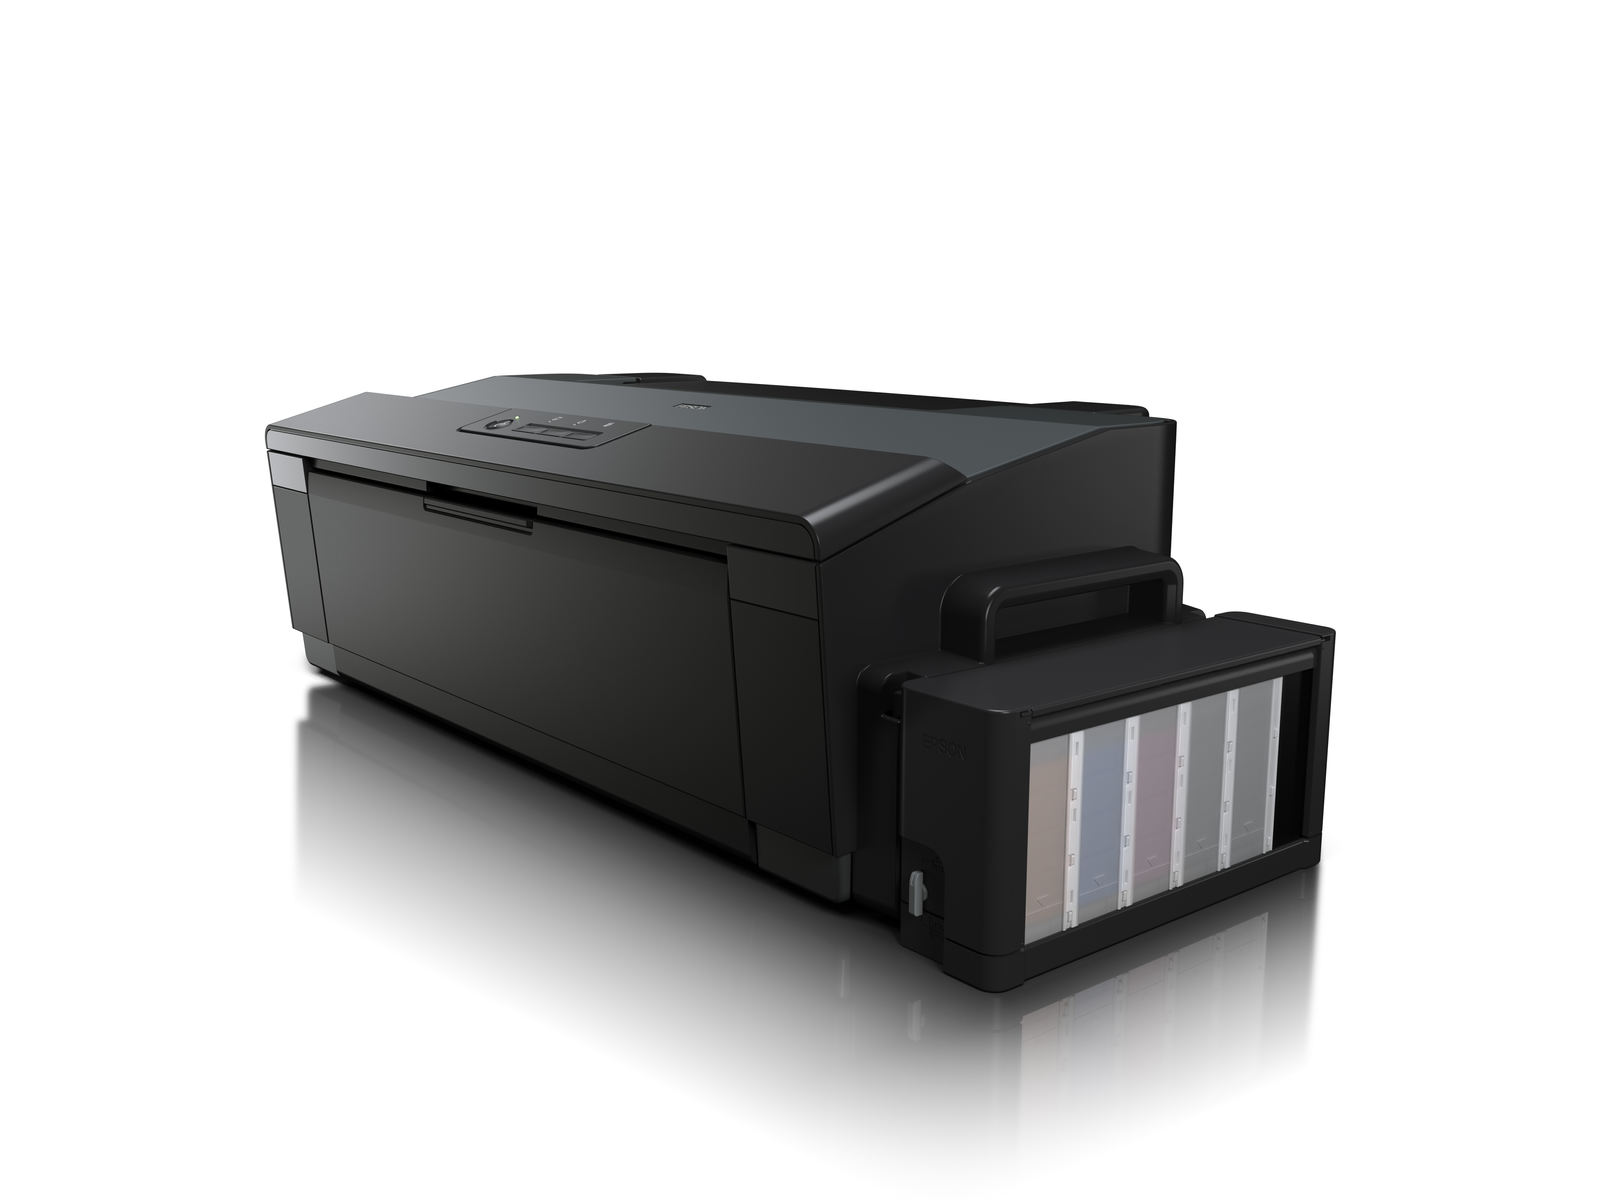 EPSON C11CD81401 Tintenstrahl Drucker Netzwerkfähig